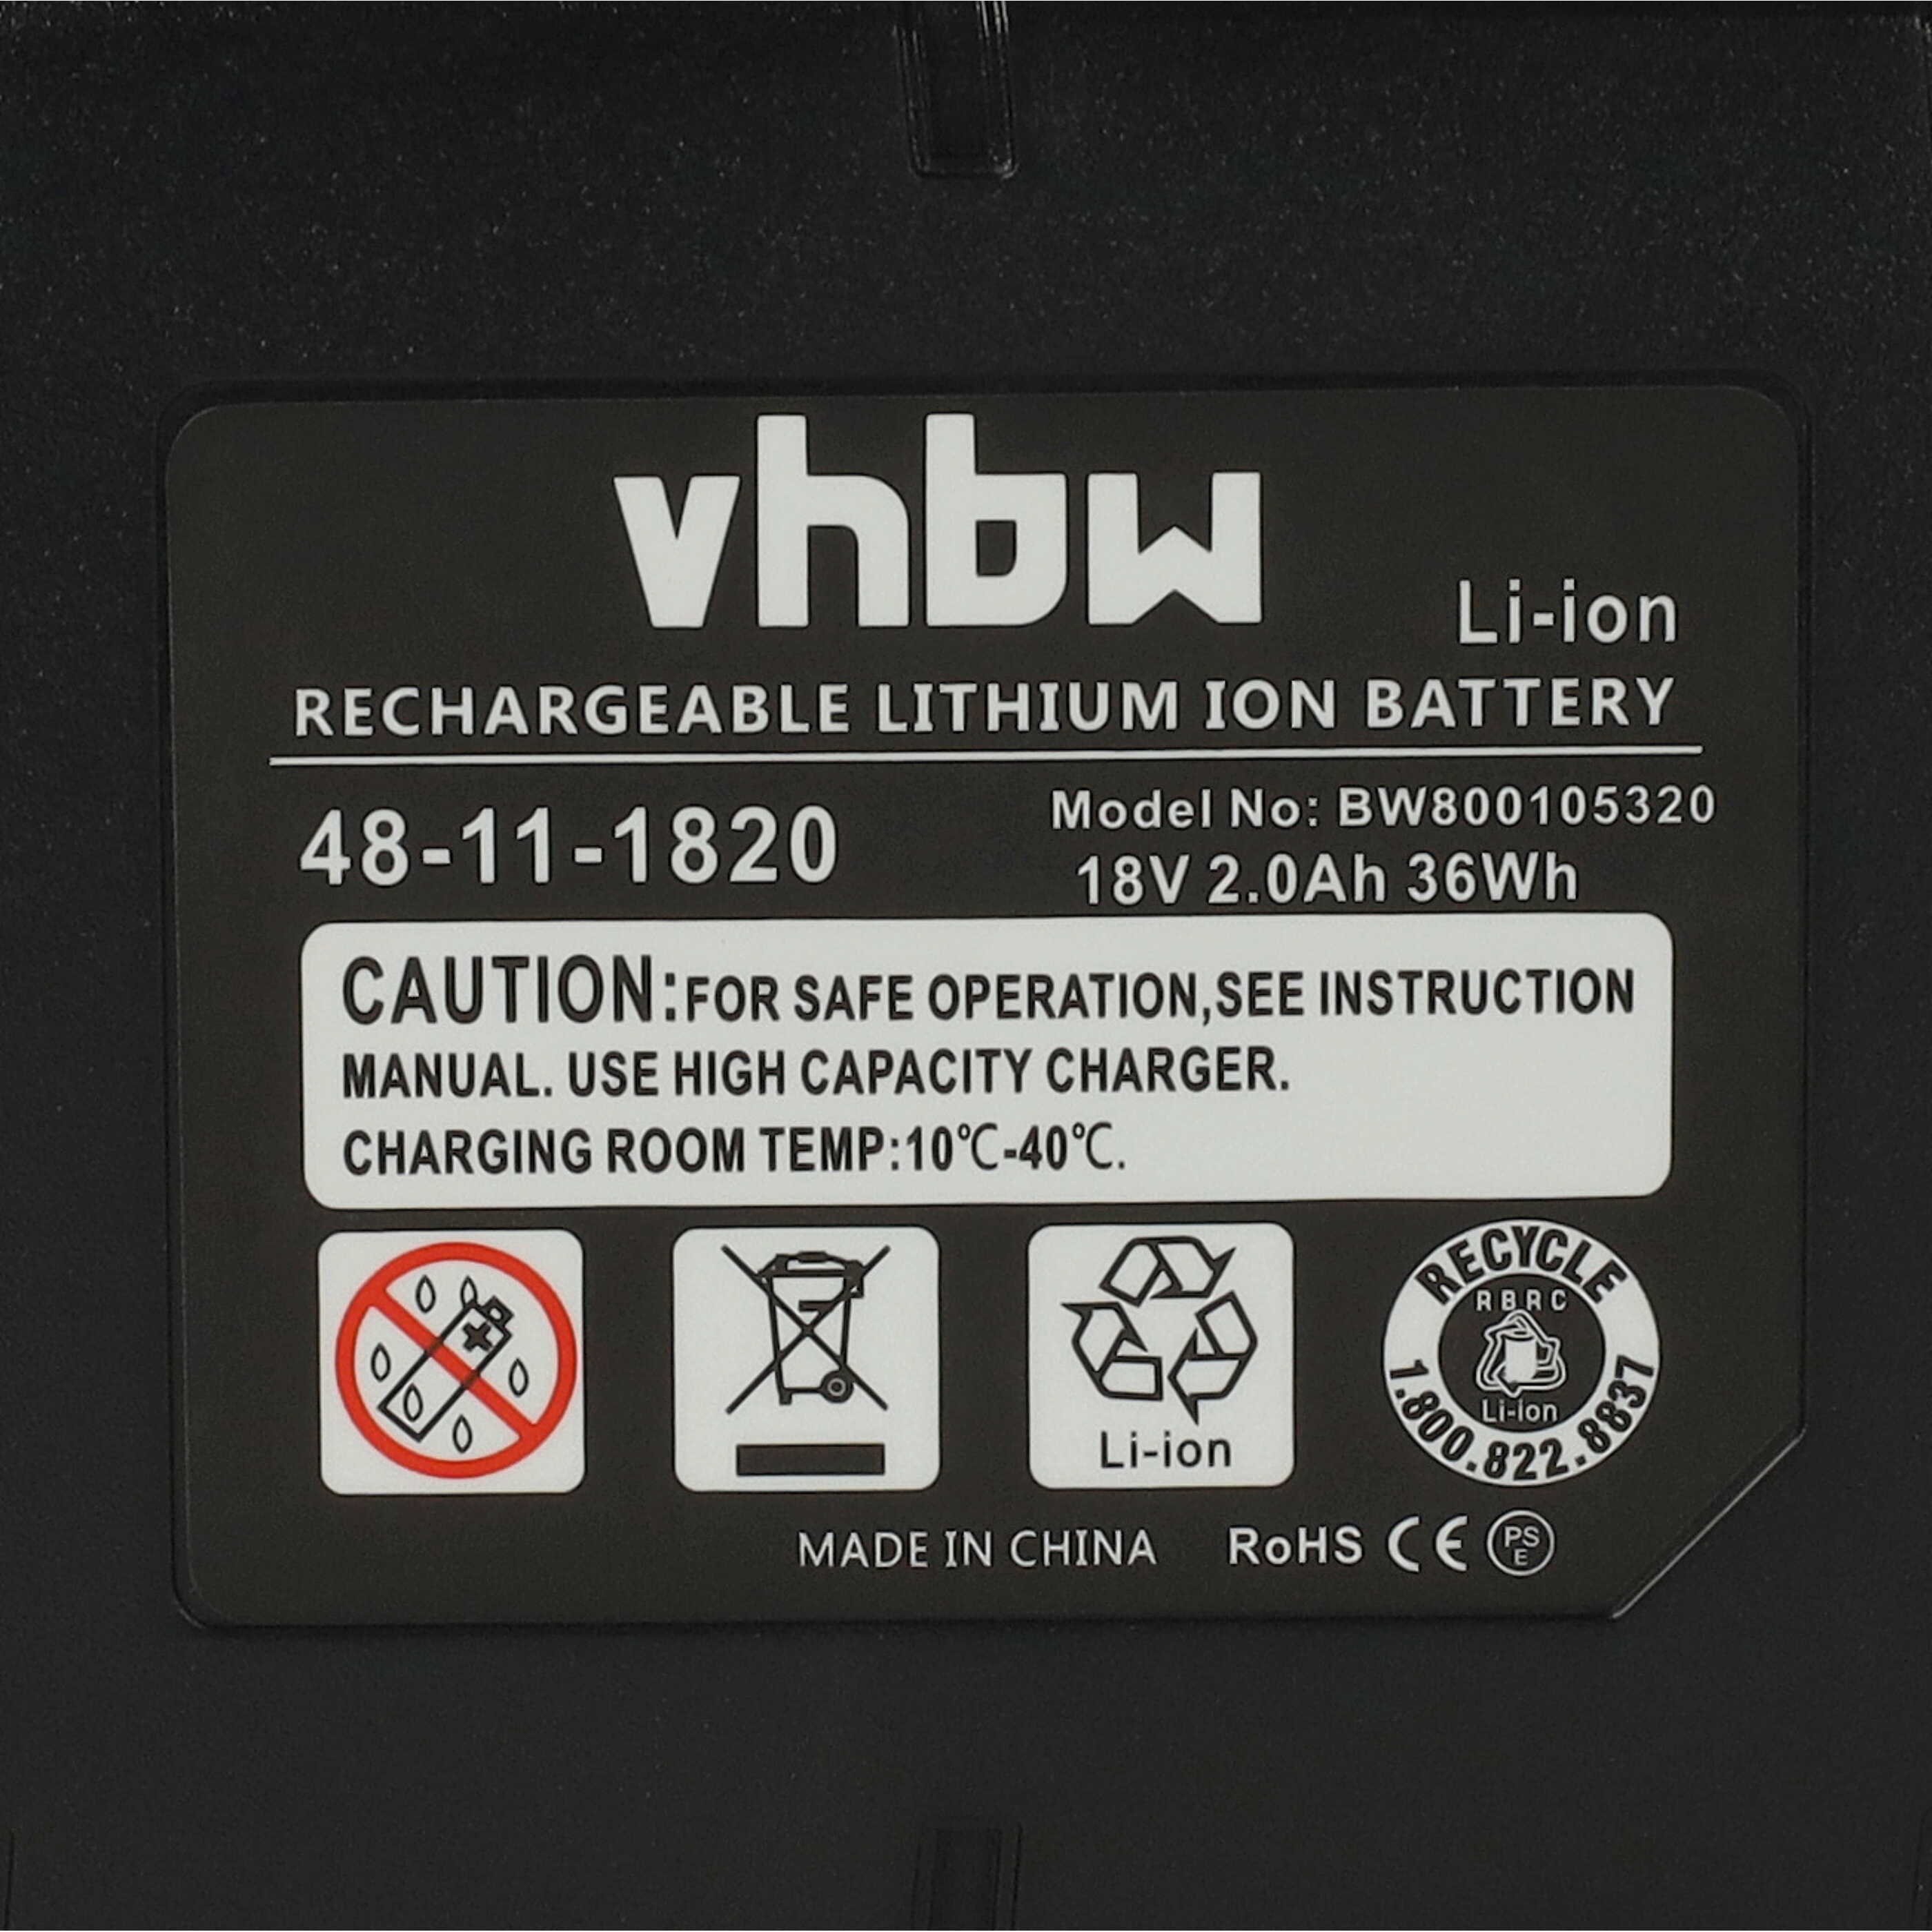 Batterie remplace Berner BBP 18, 175187 pour outil électrique - 2000 mAh, 18 V, Li-ion